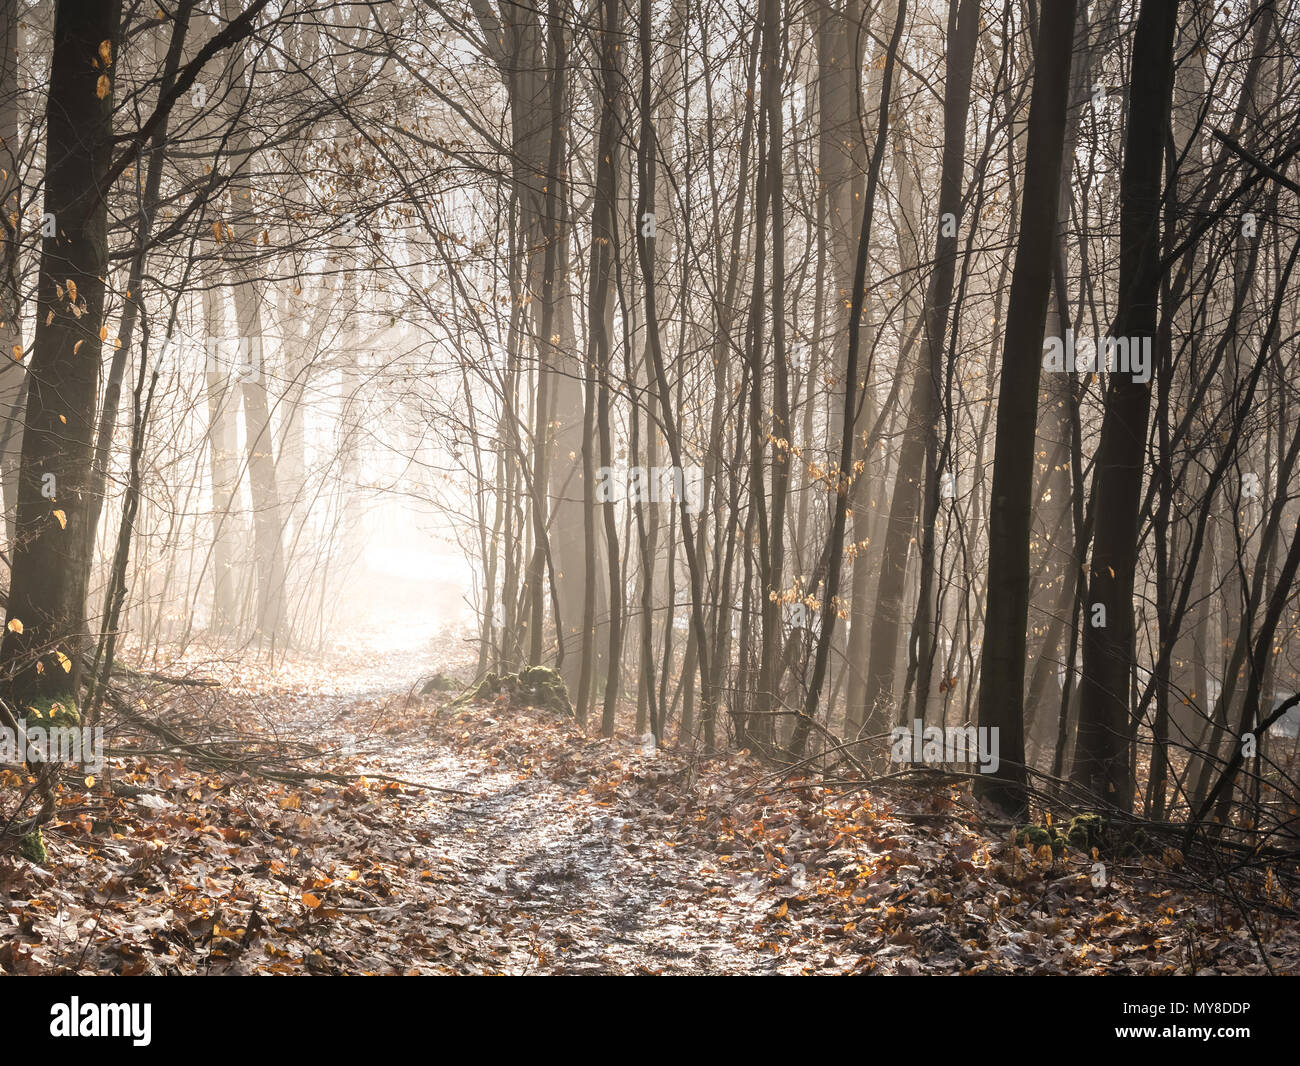 Un chemin de randonnée menant à travers une forêt enchantée à la mystique, dans une lumière dans le lointain. (Allemagne) Banque D'Images